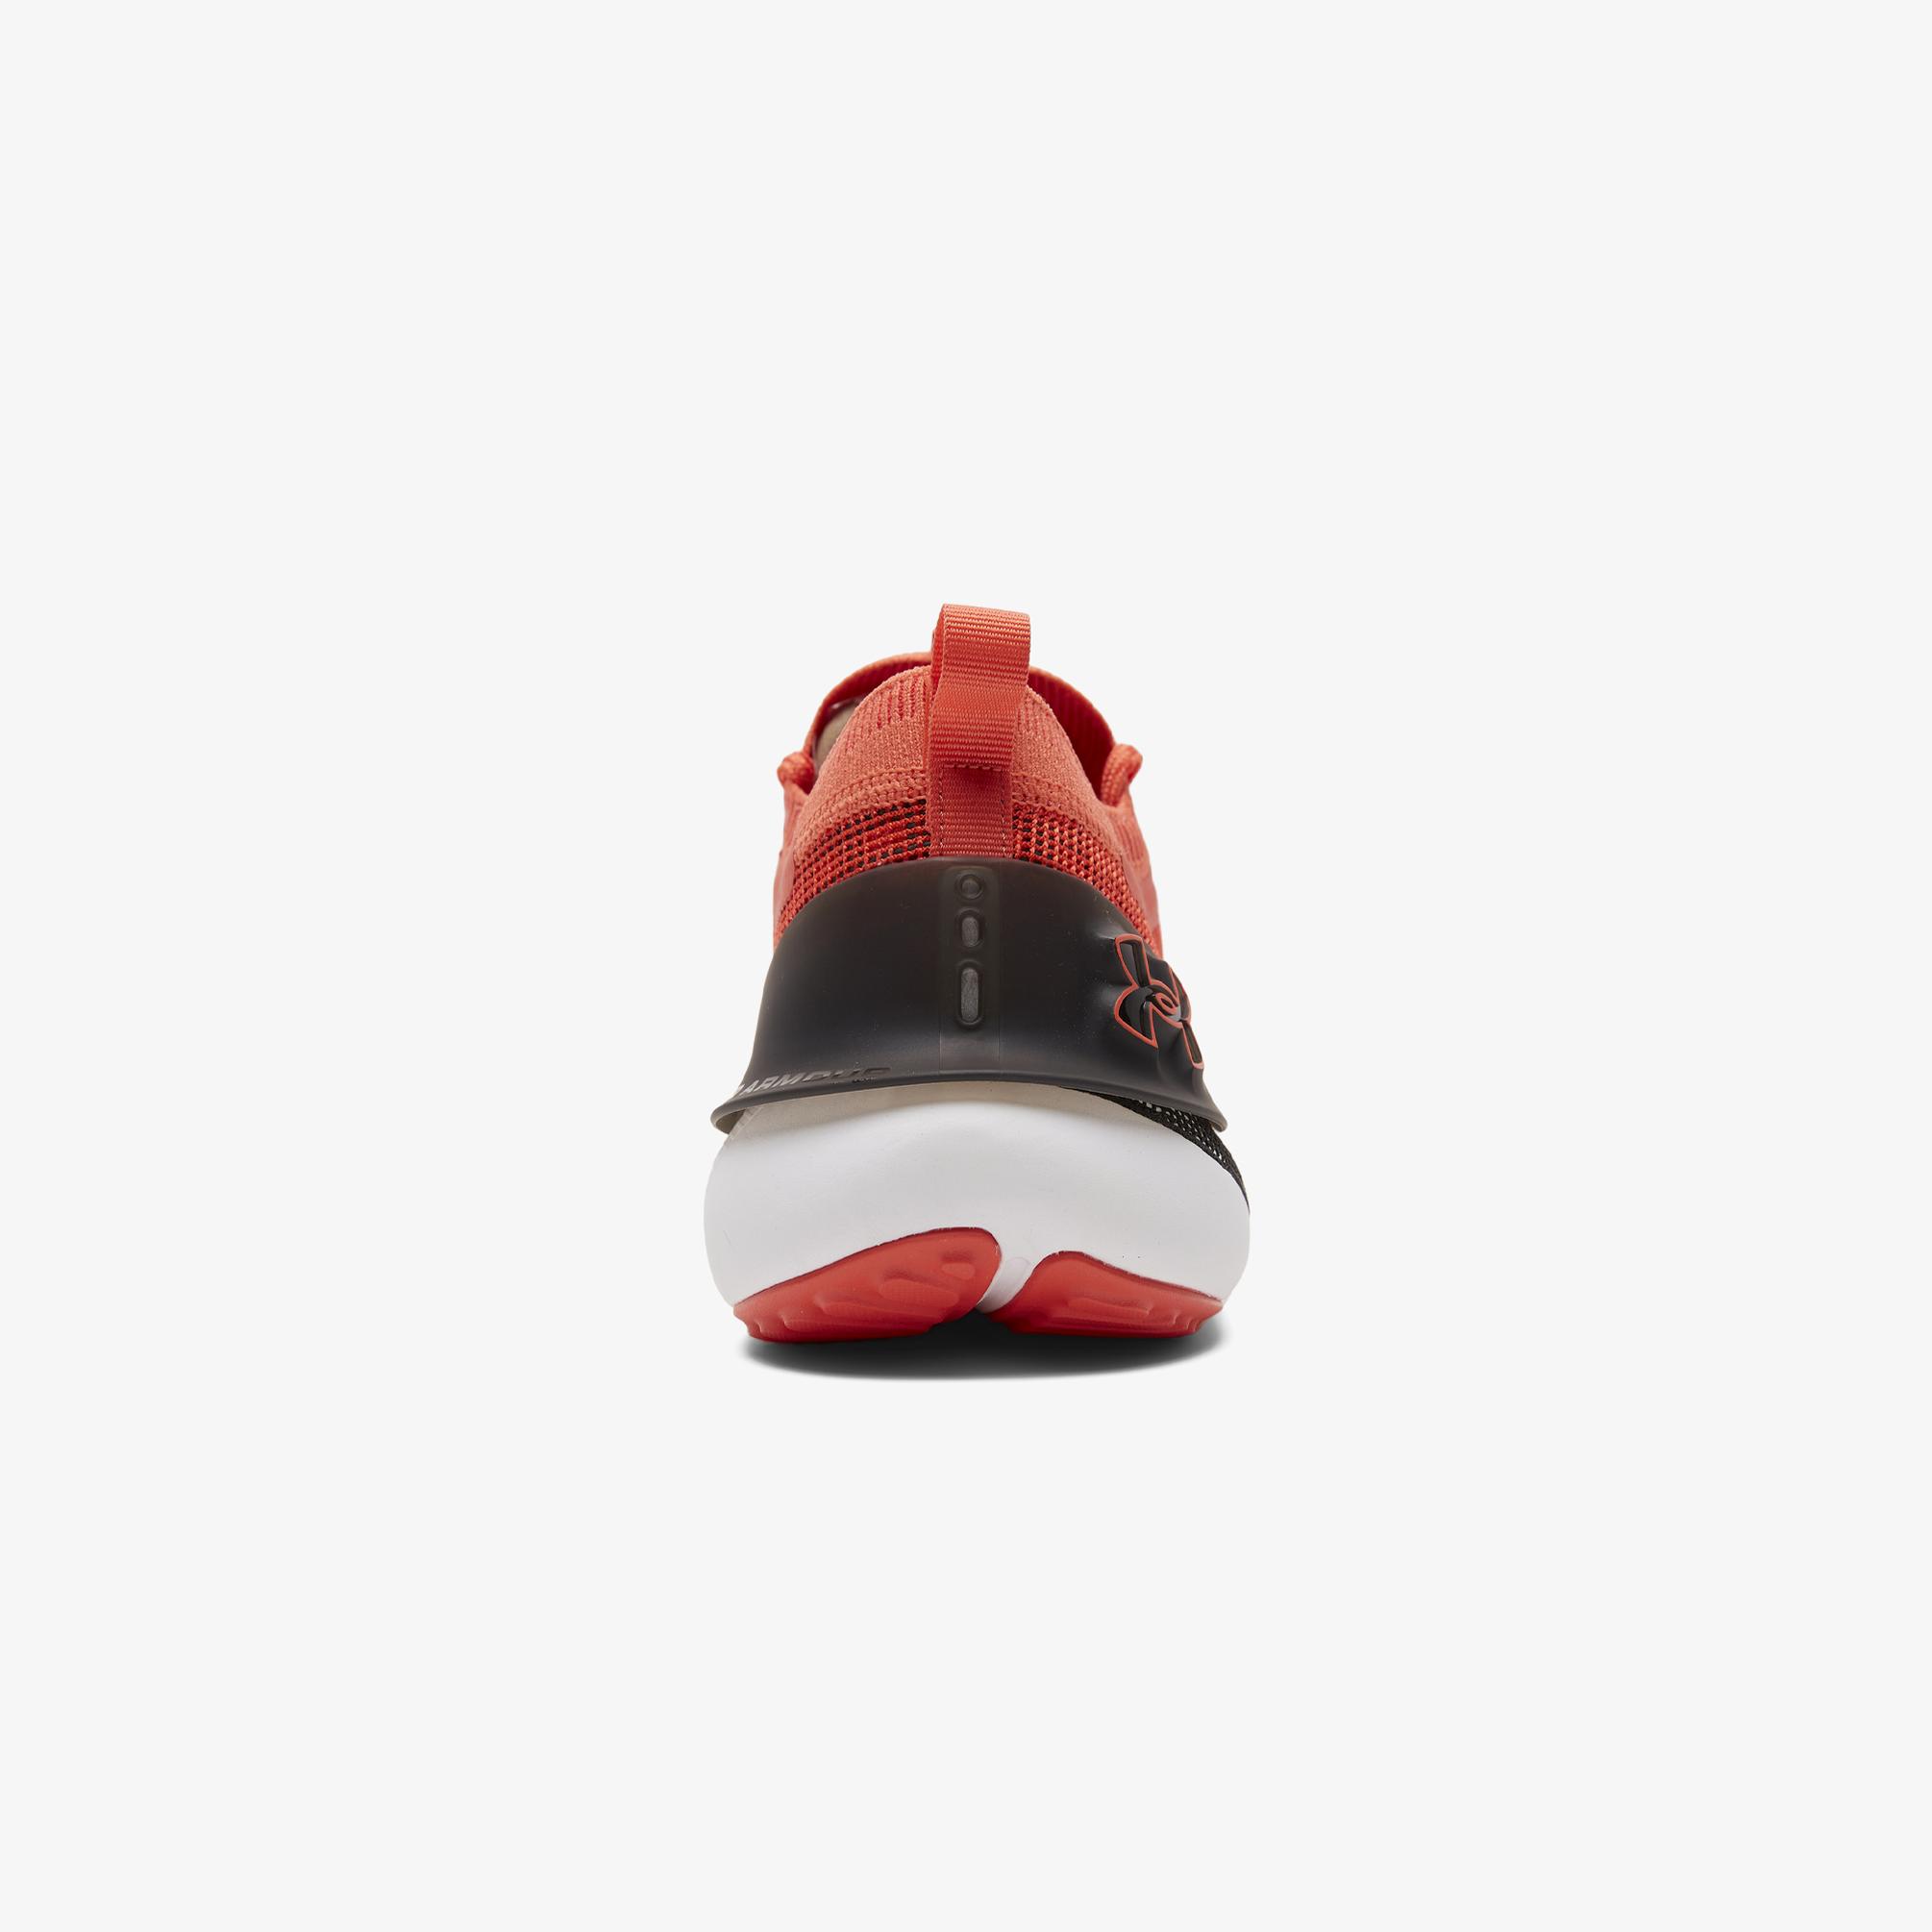  Under Armour Hovr Phantom 3 Se Erkek Kırmızı Spor Ayakkabı